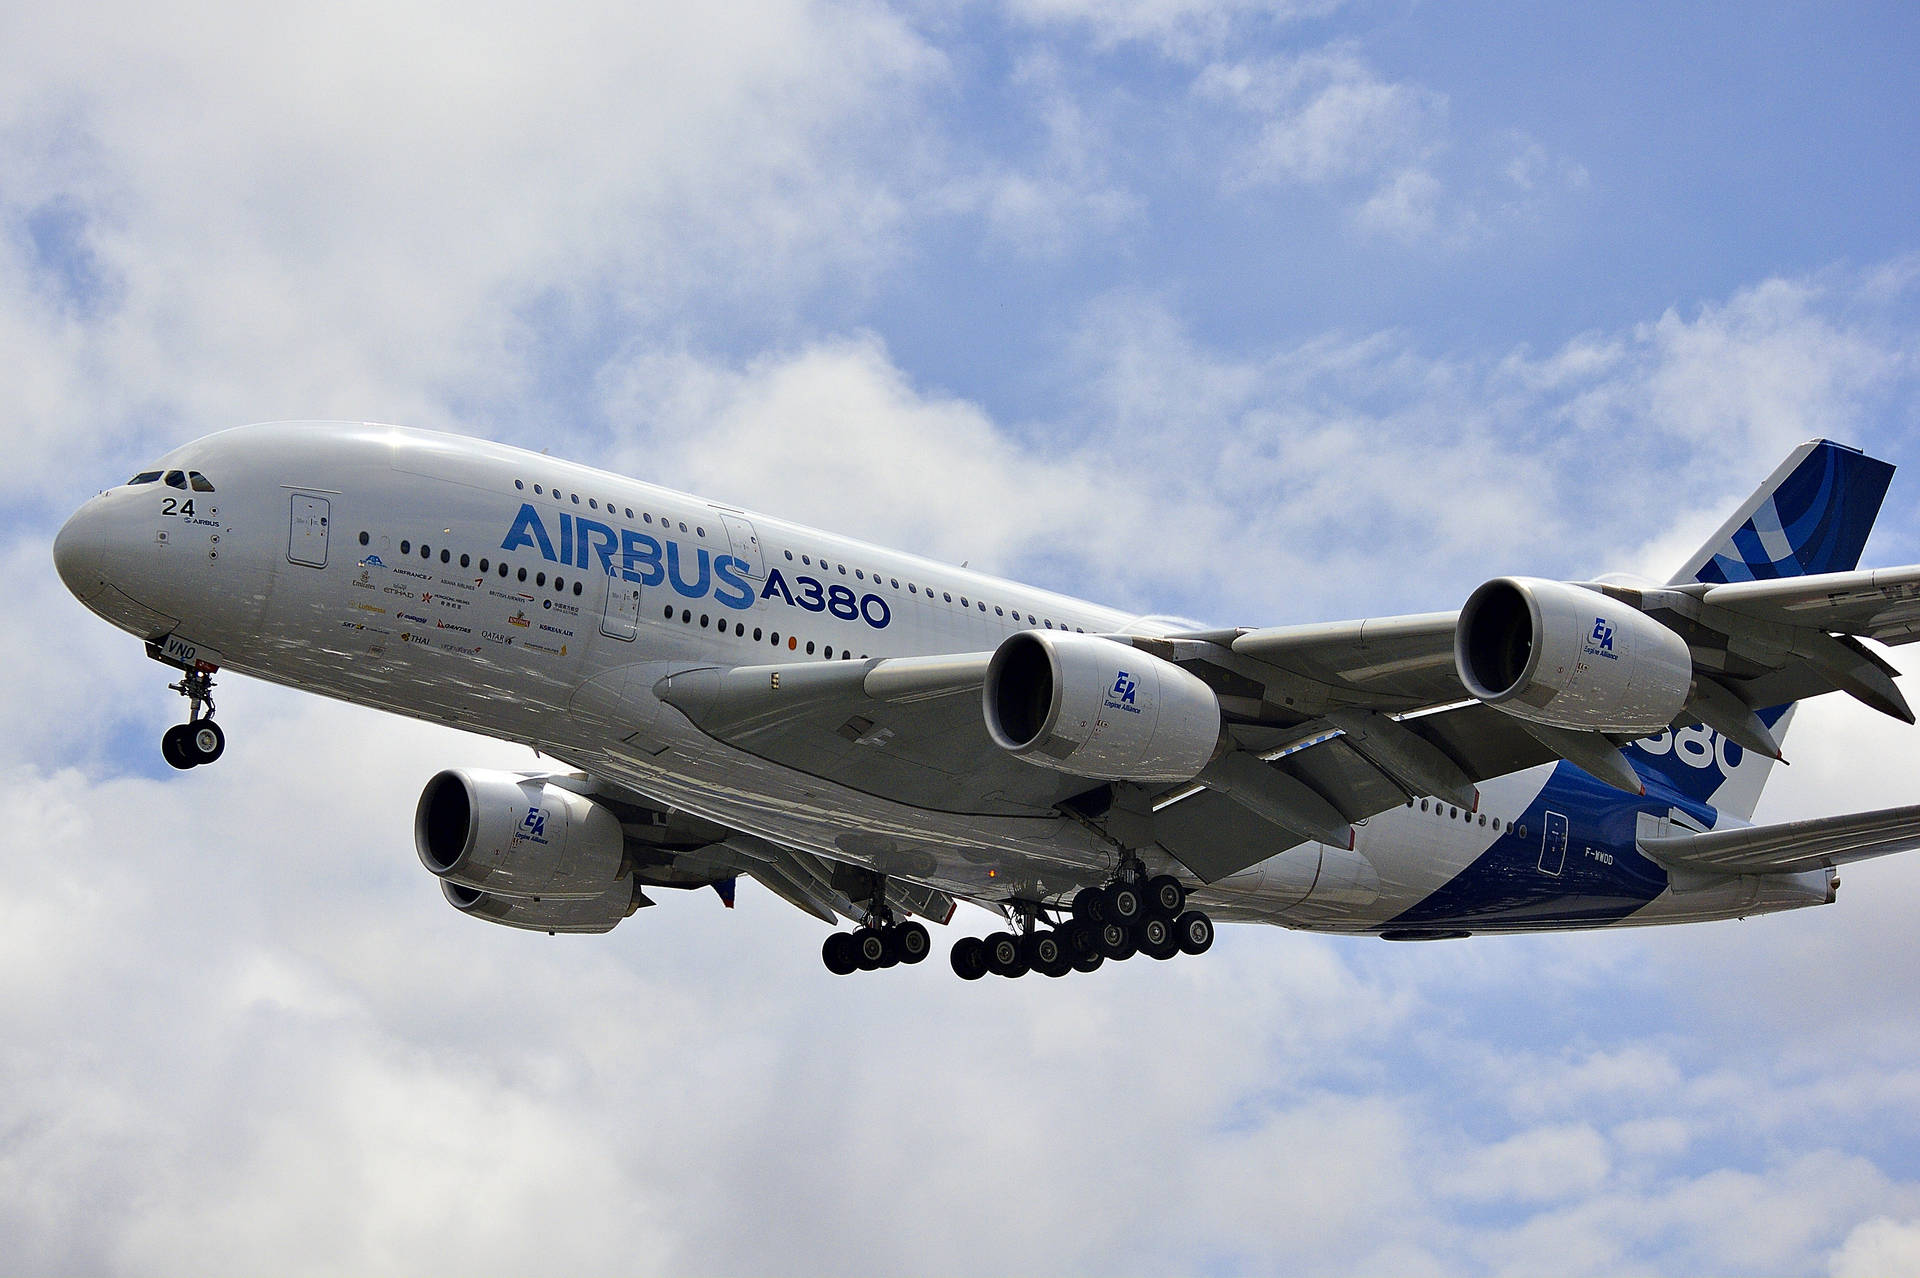 Aviãoairbus A380 Em Exposição Aeroespacial. Papel de Parede